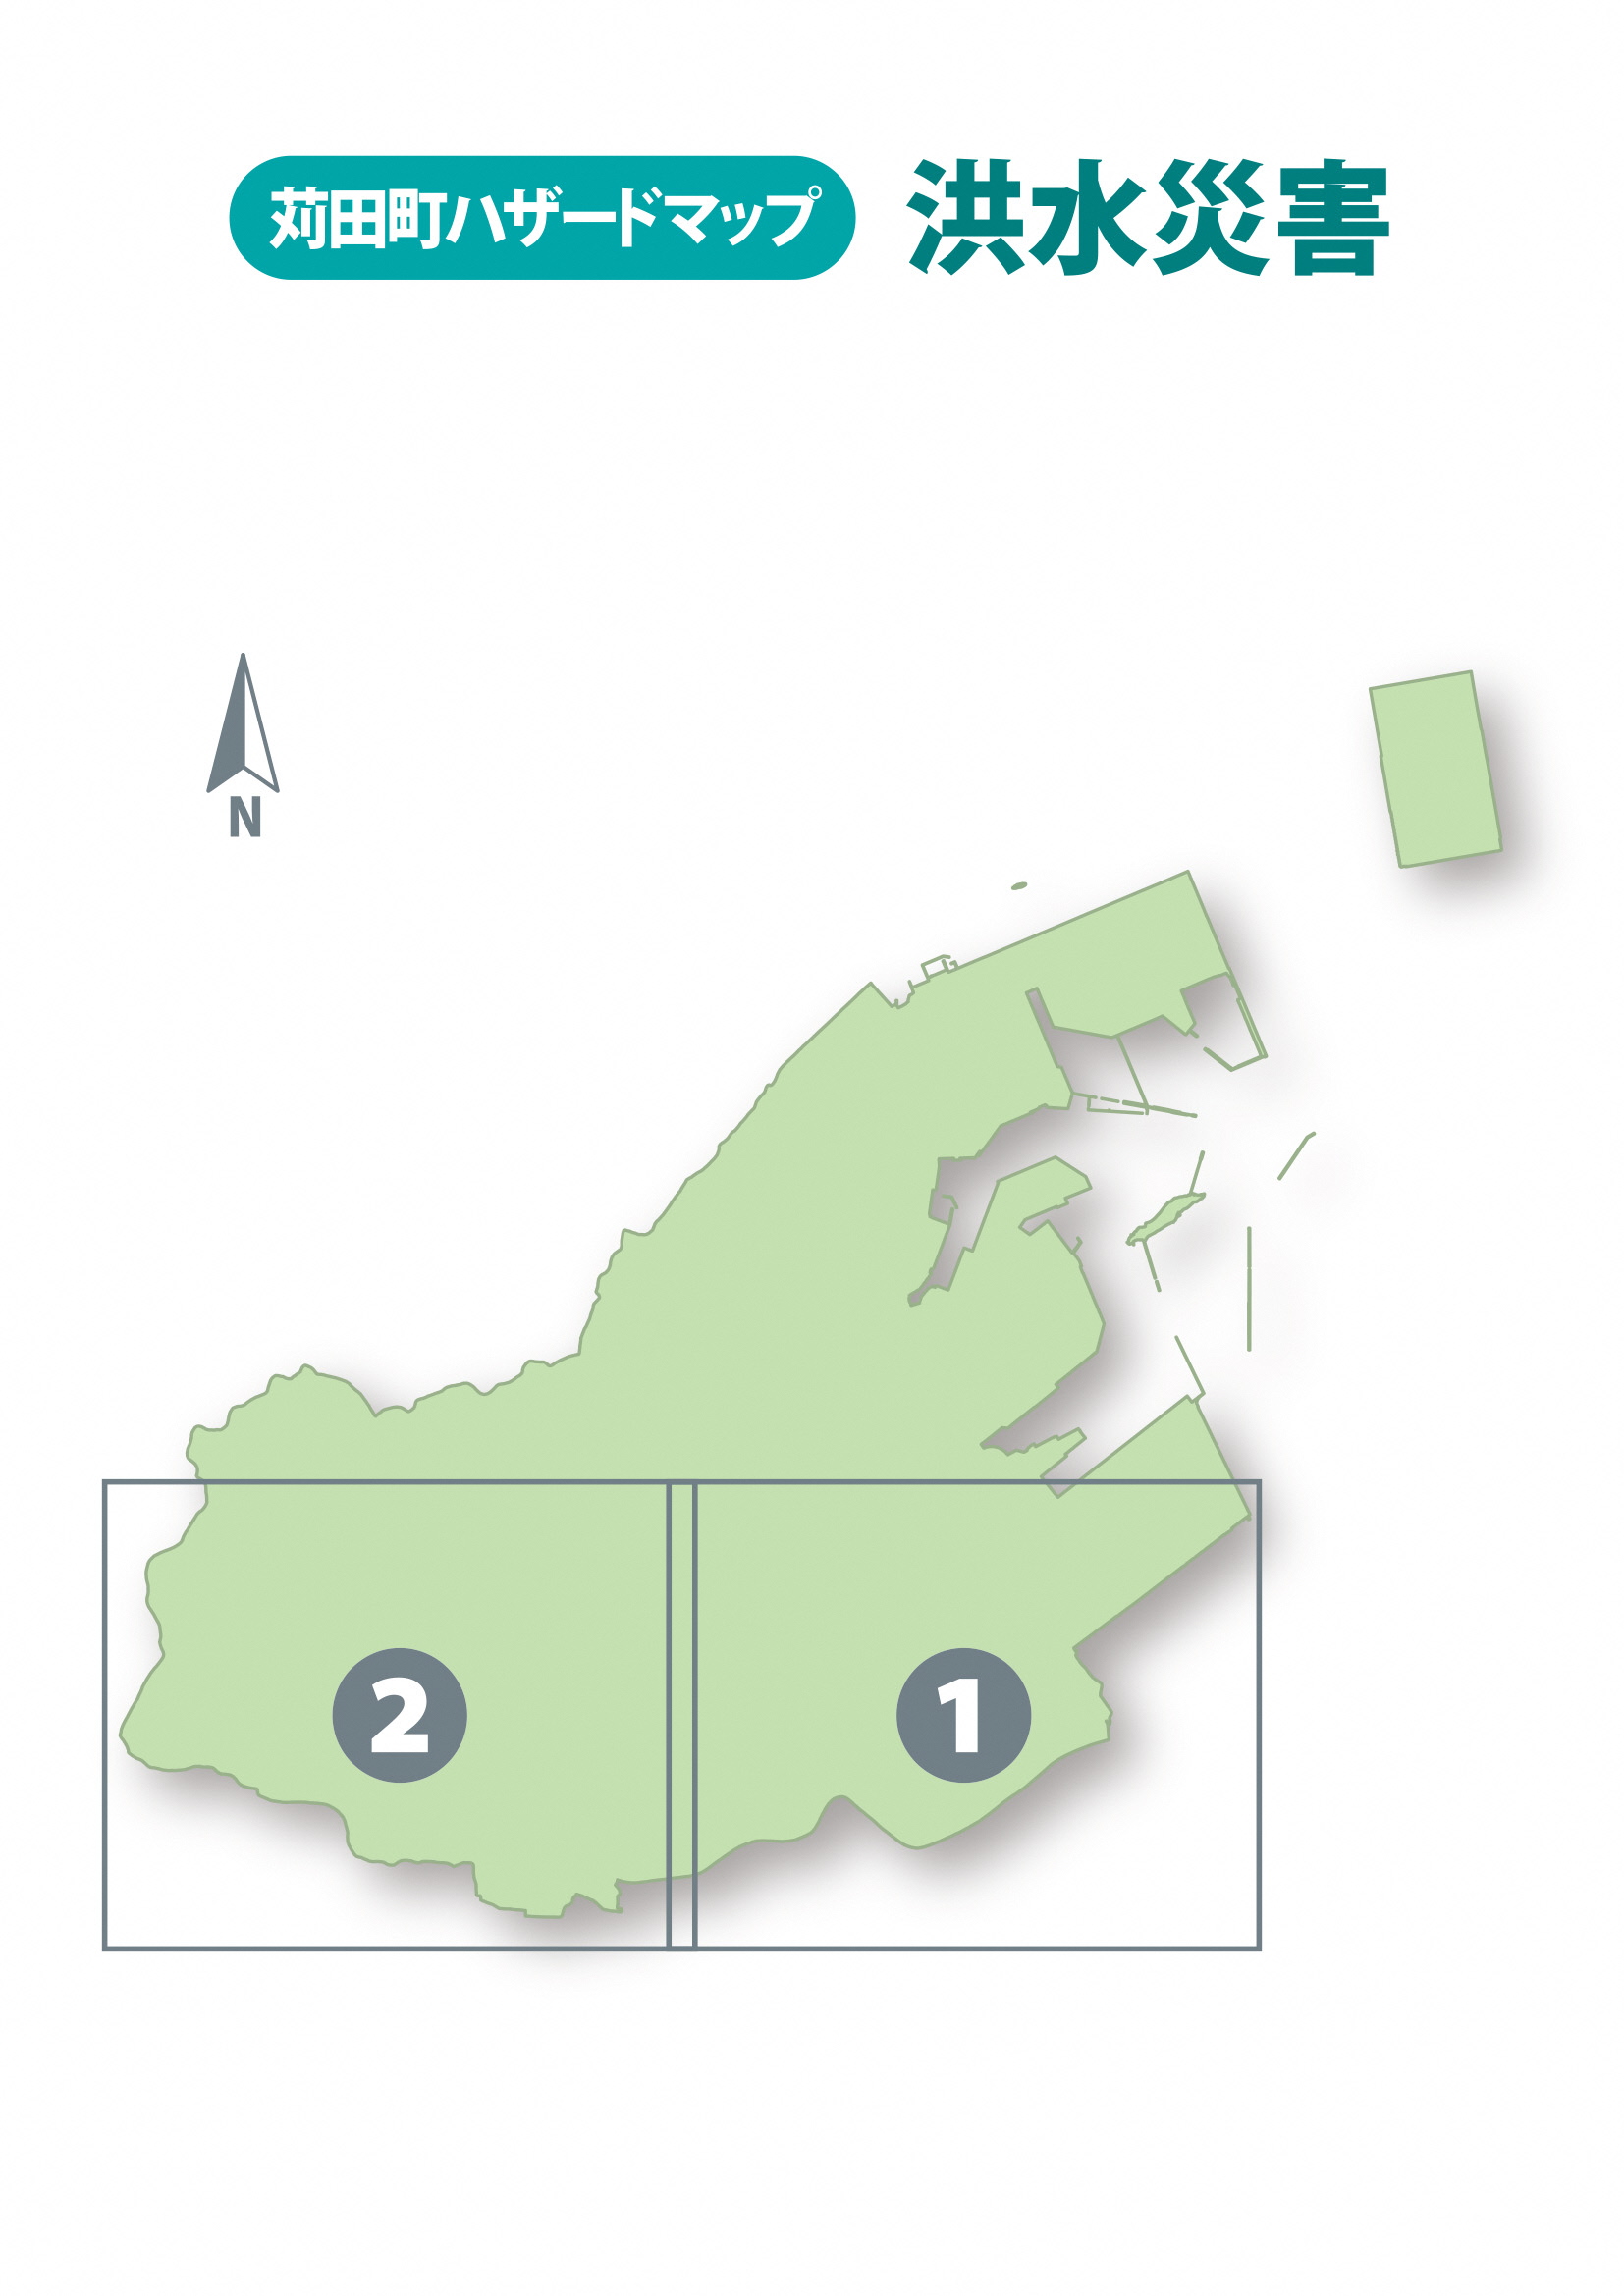 苅田町防災情報マップの画像1